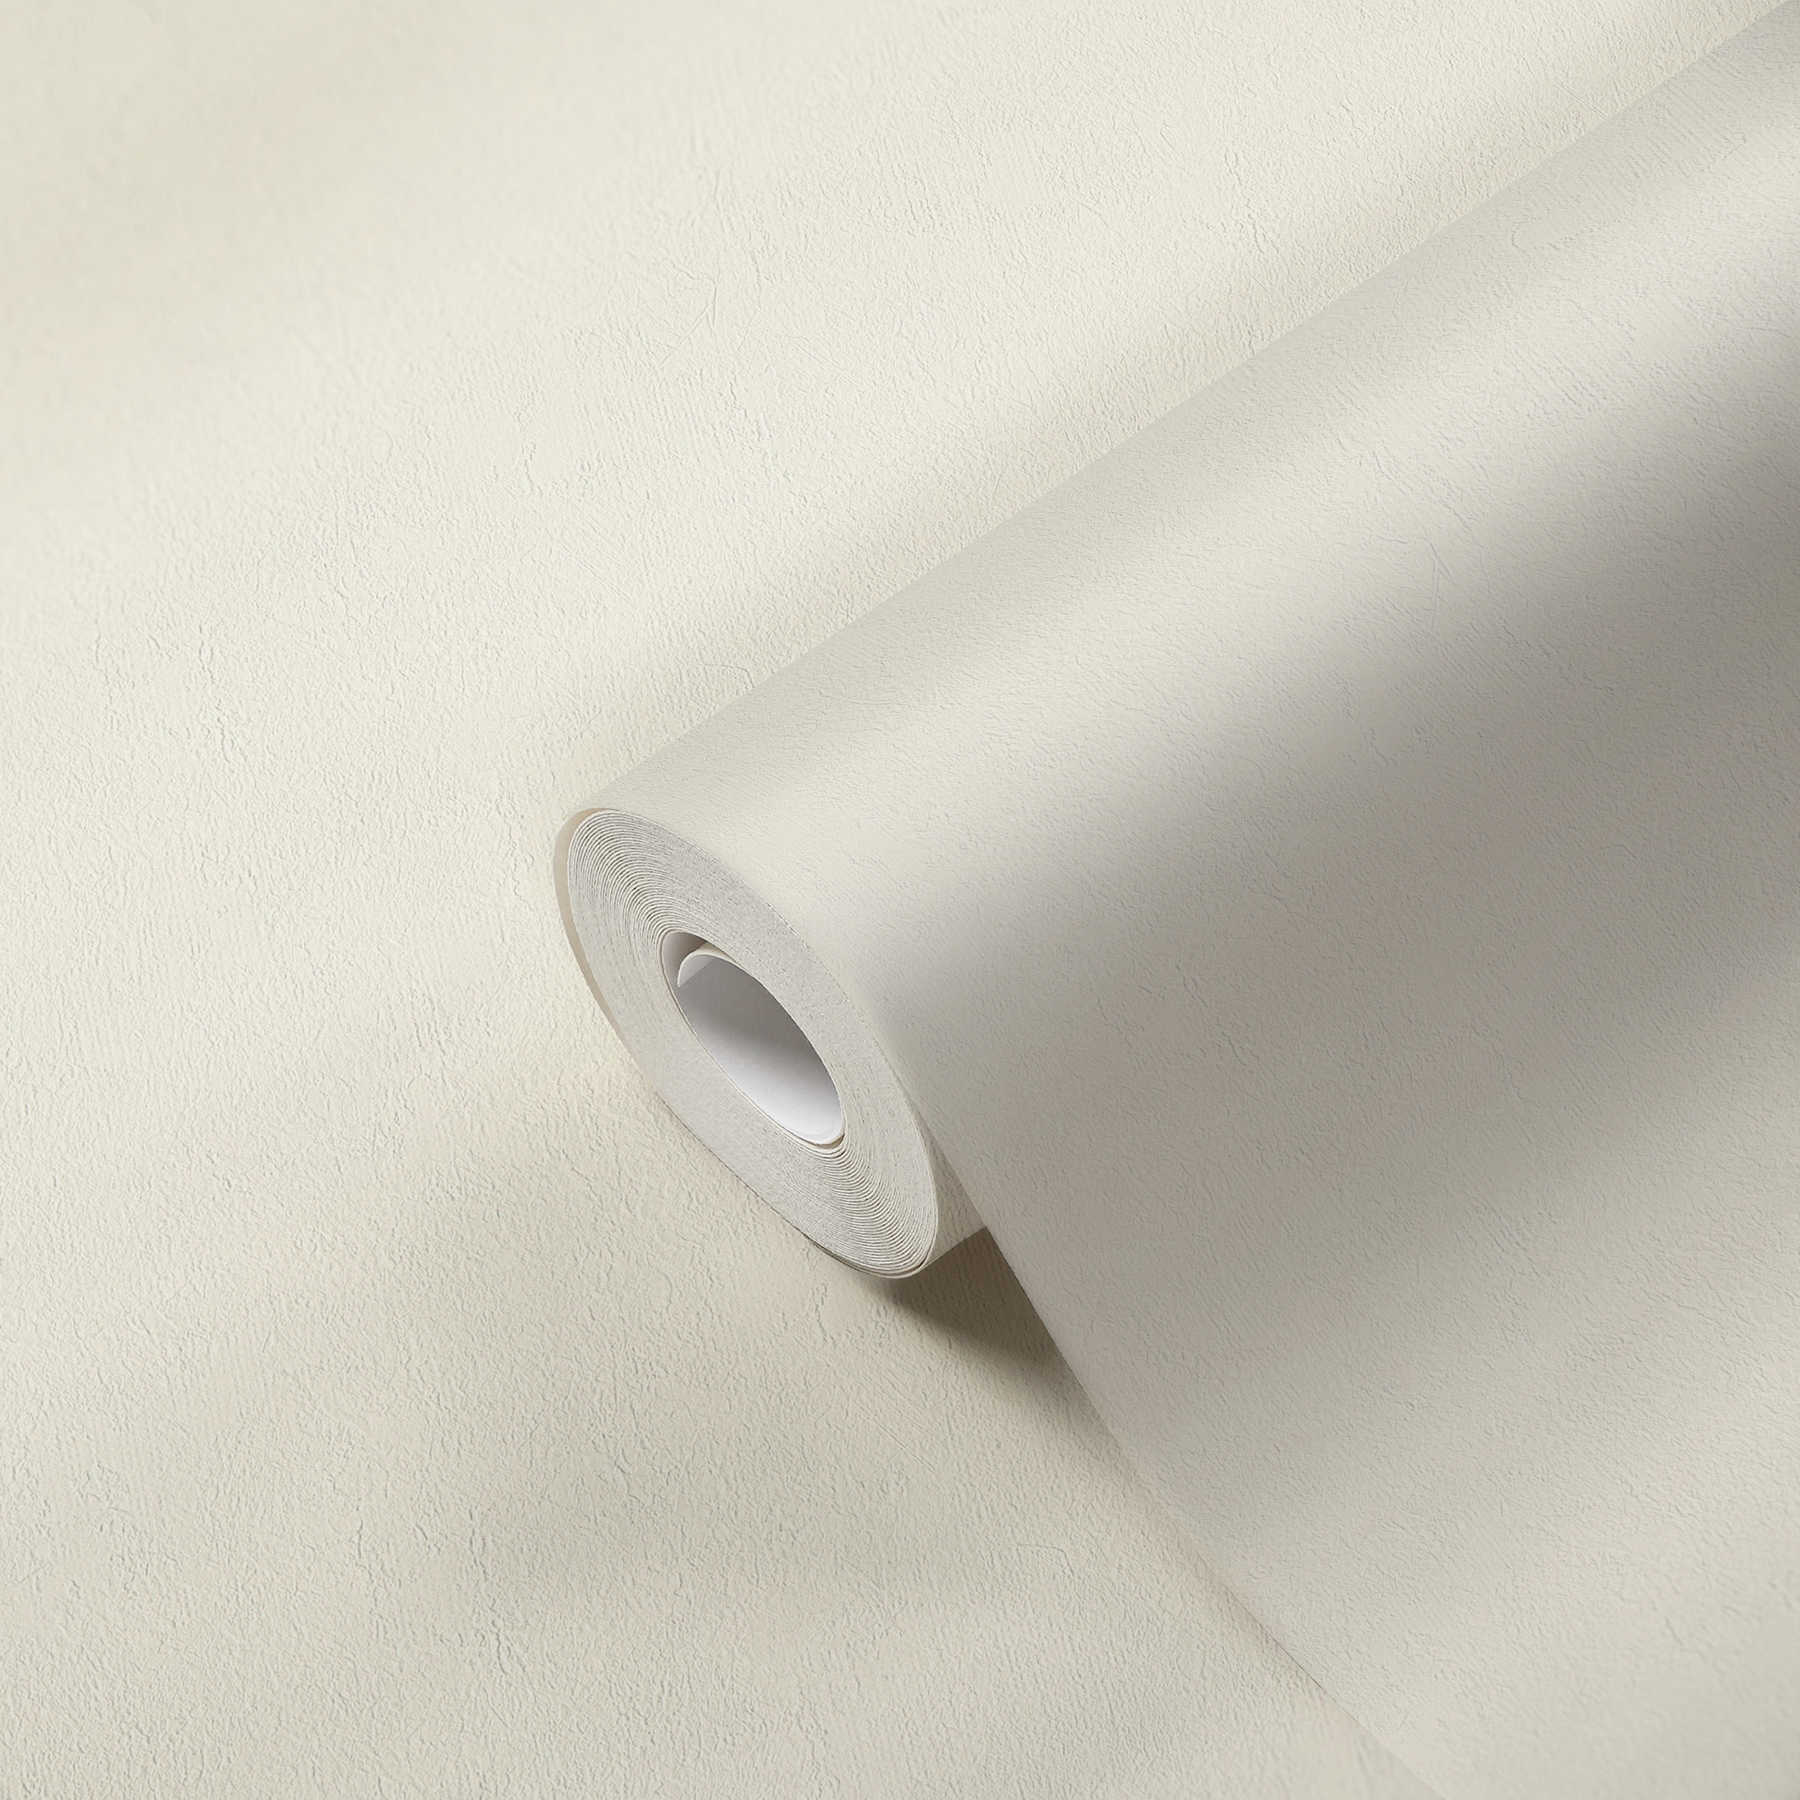             Non-woven wallpaper plain cream, neutral plain wallpaper silk matte
        